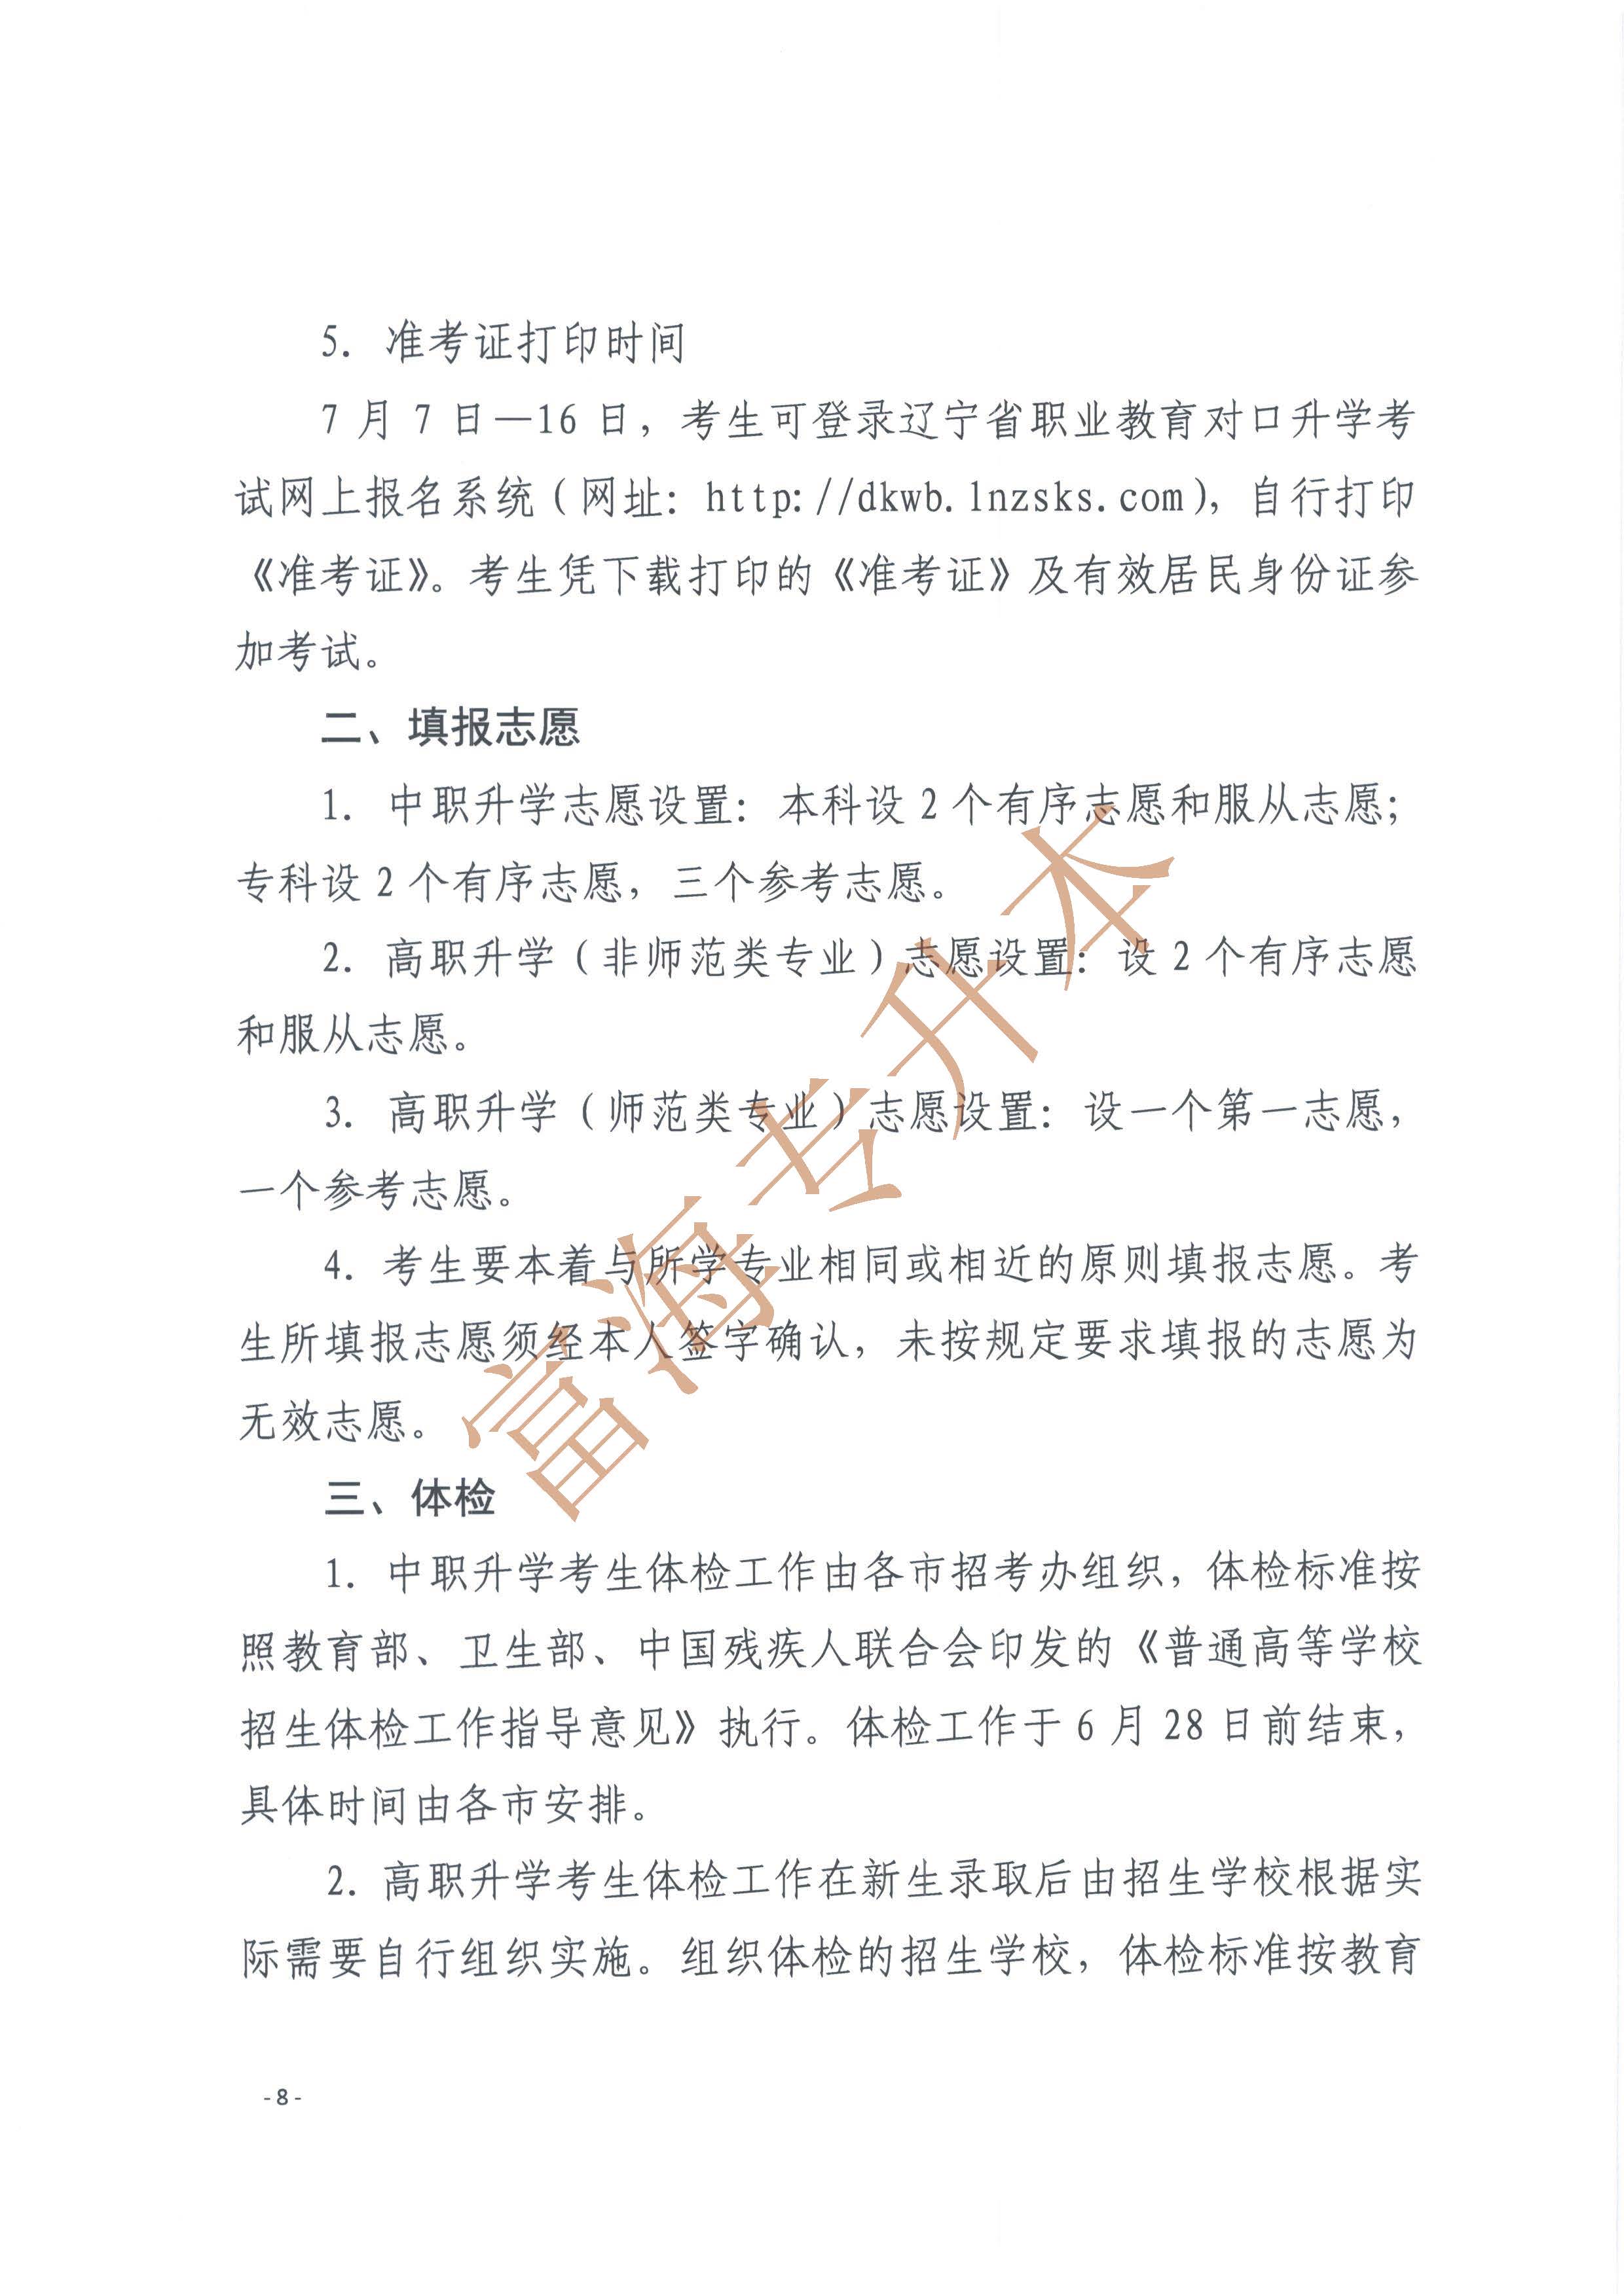 辽宁省2017年职业教育对口升学考试招生工作实施办法的通知8